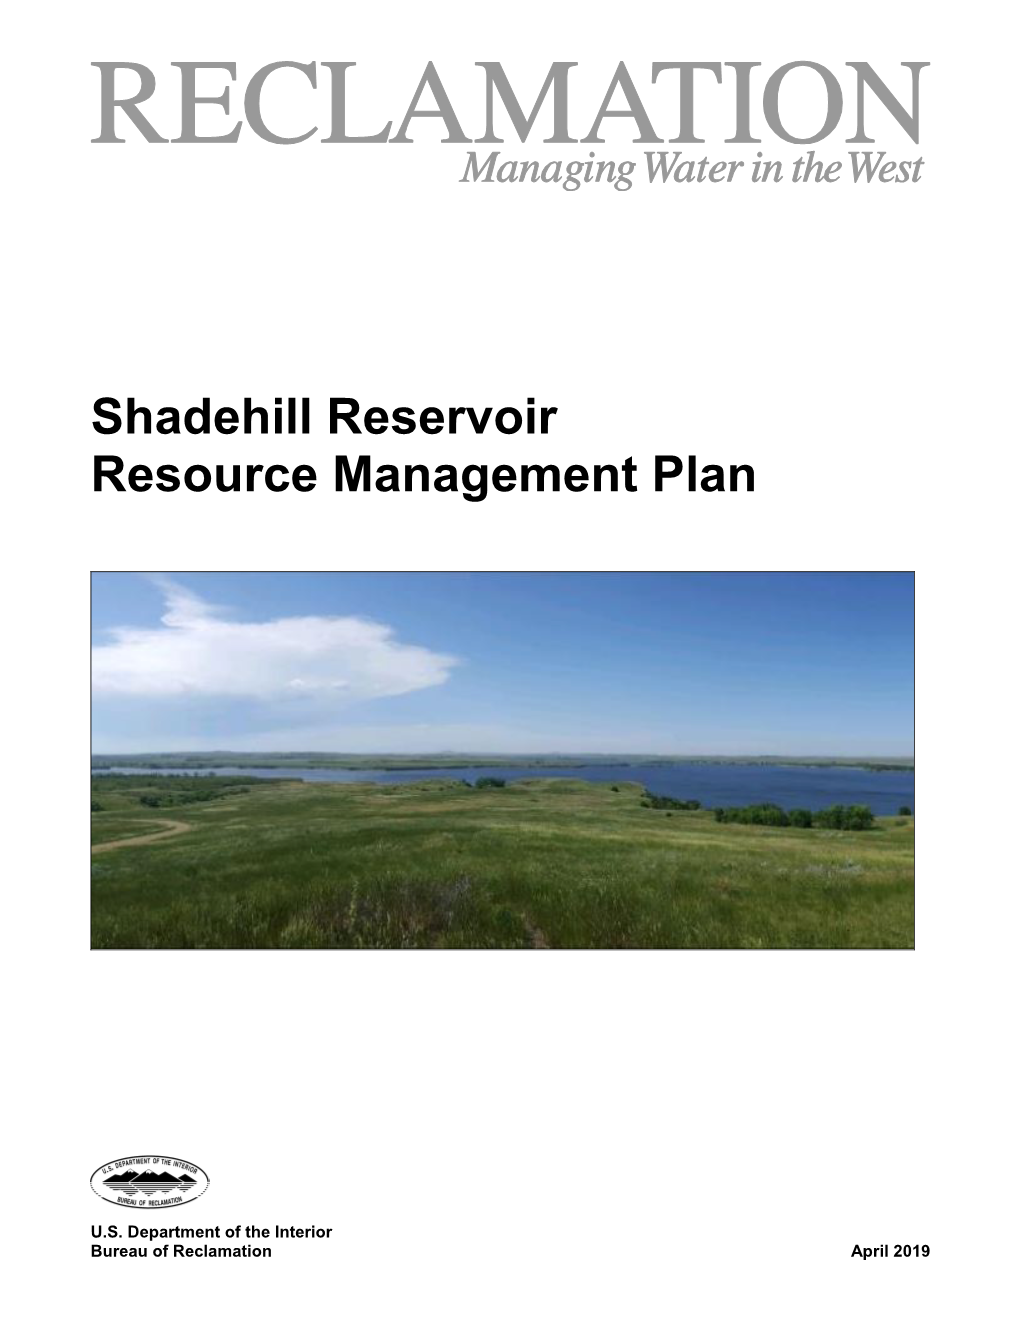 Shadehill Reservoir Resource Management Plan